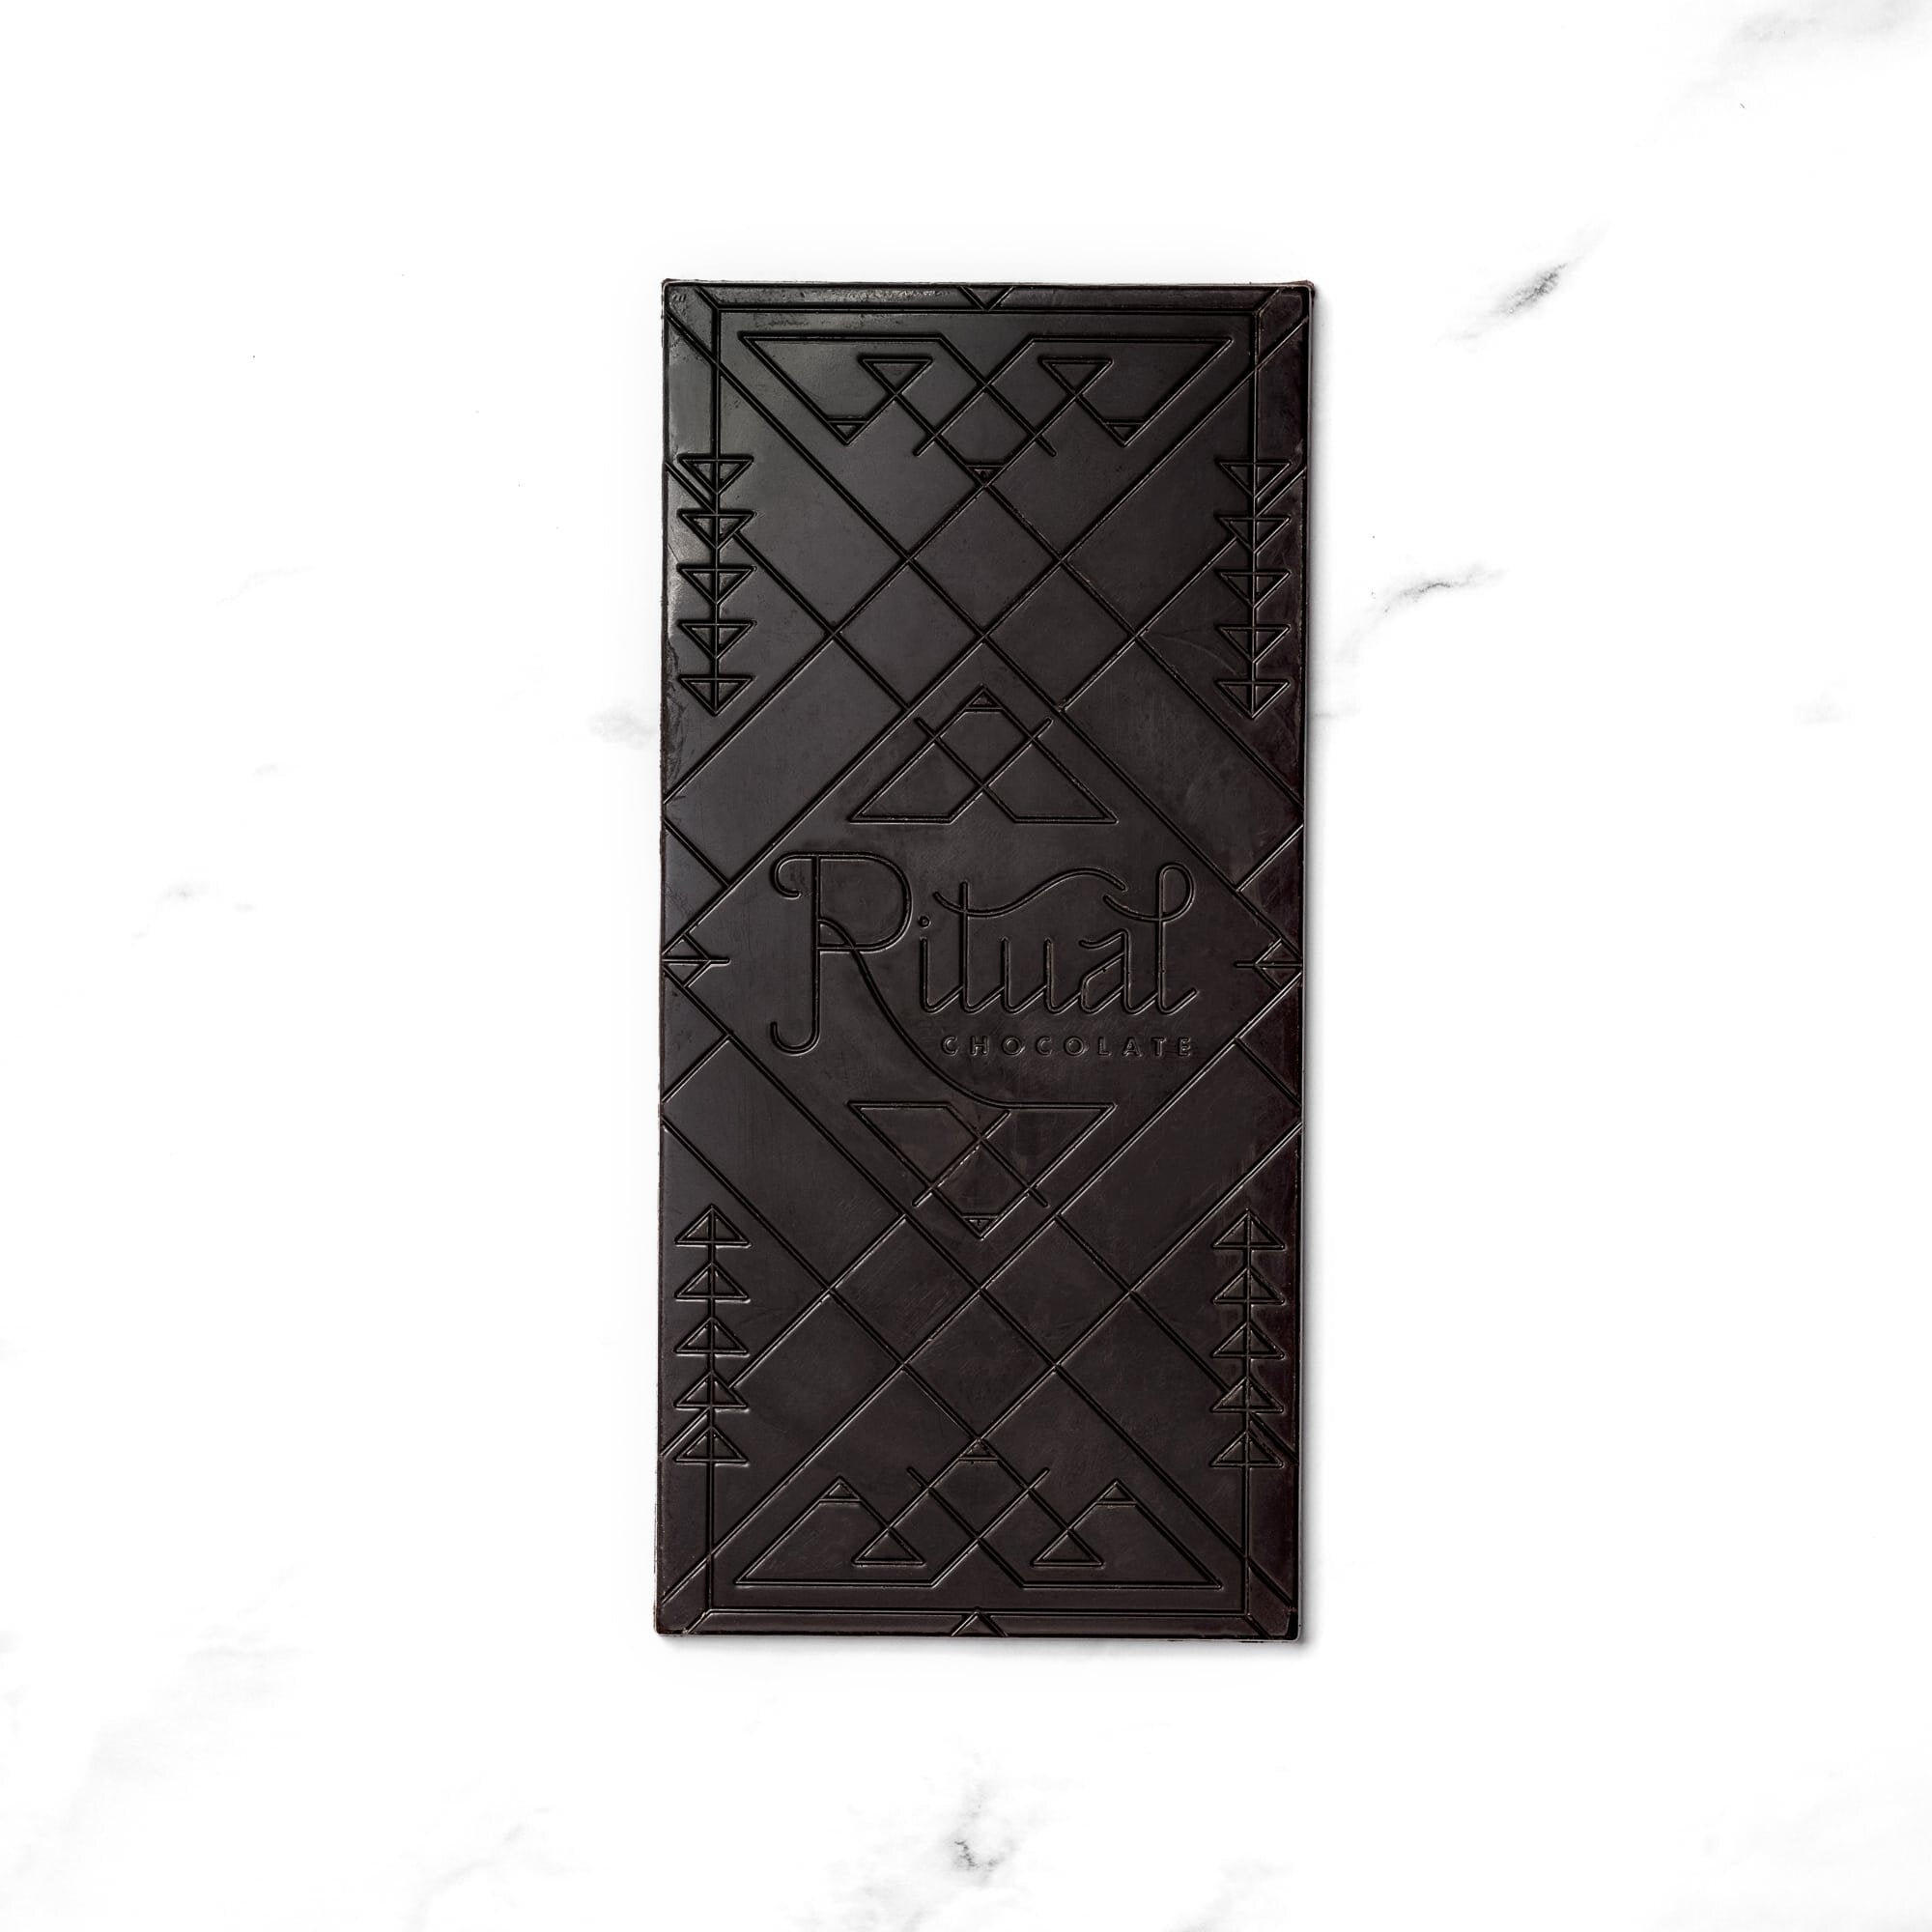 The Nib Bar 70% – Ritual Chocolate